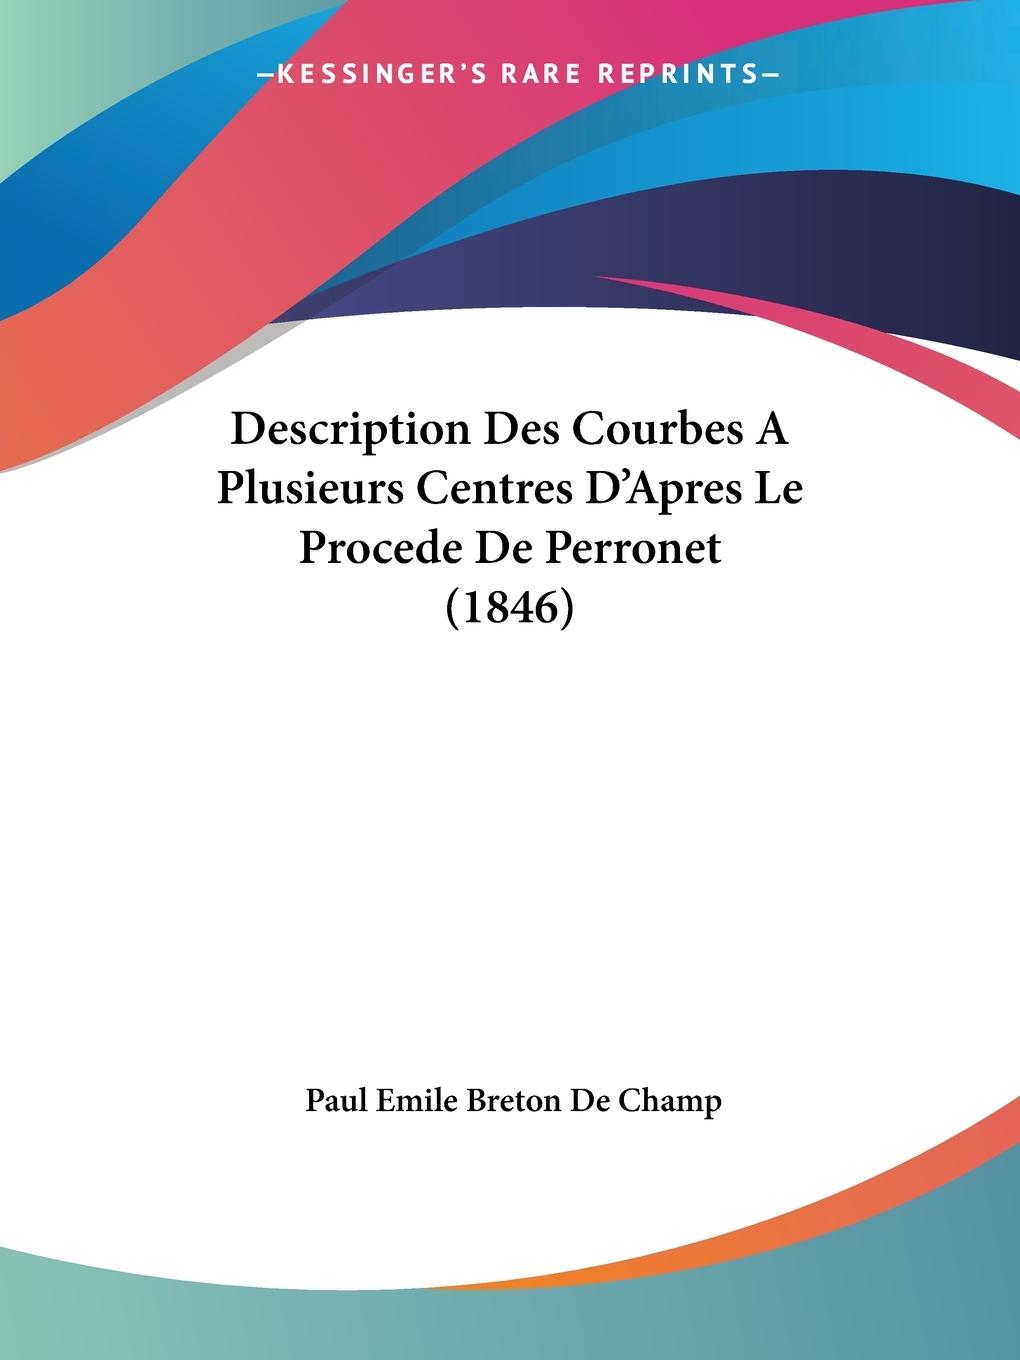 Description Des Courbes A Plusieurs Centres D Apres Le Procede De Perronet (1846) - De Champ, Paul Emile Breton